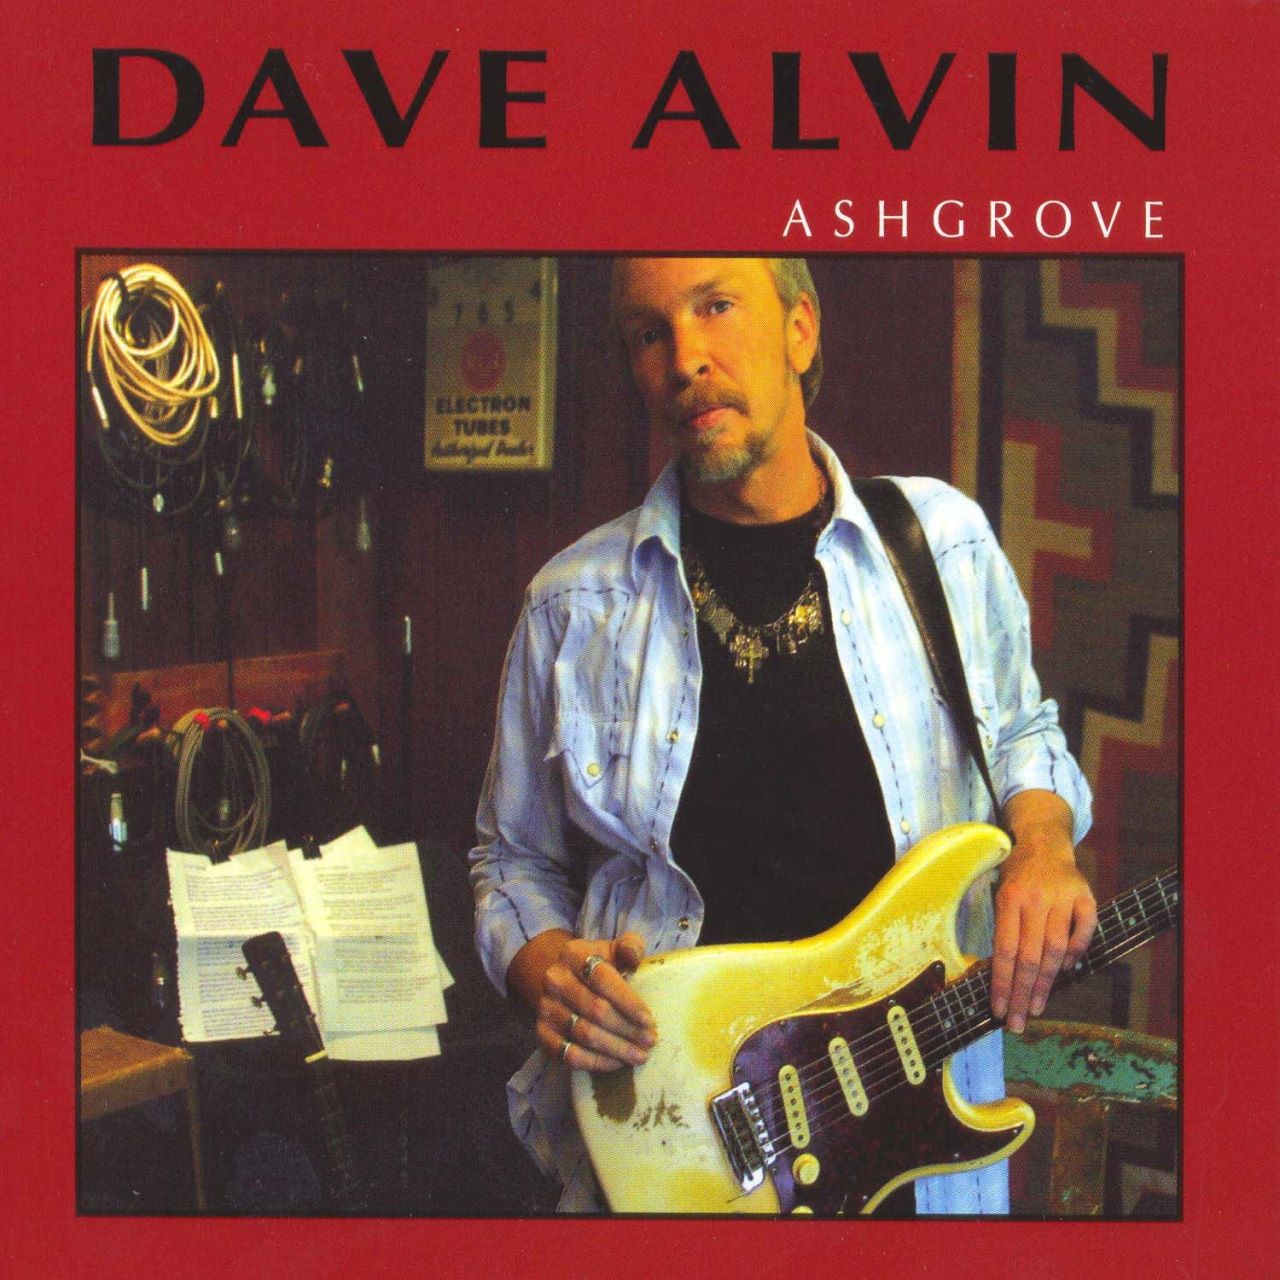 Dave Alvin - Ashgrove cover album